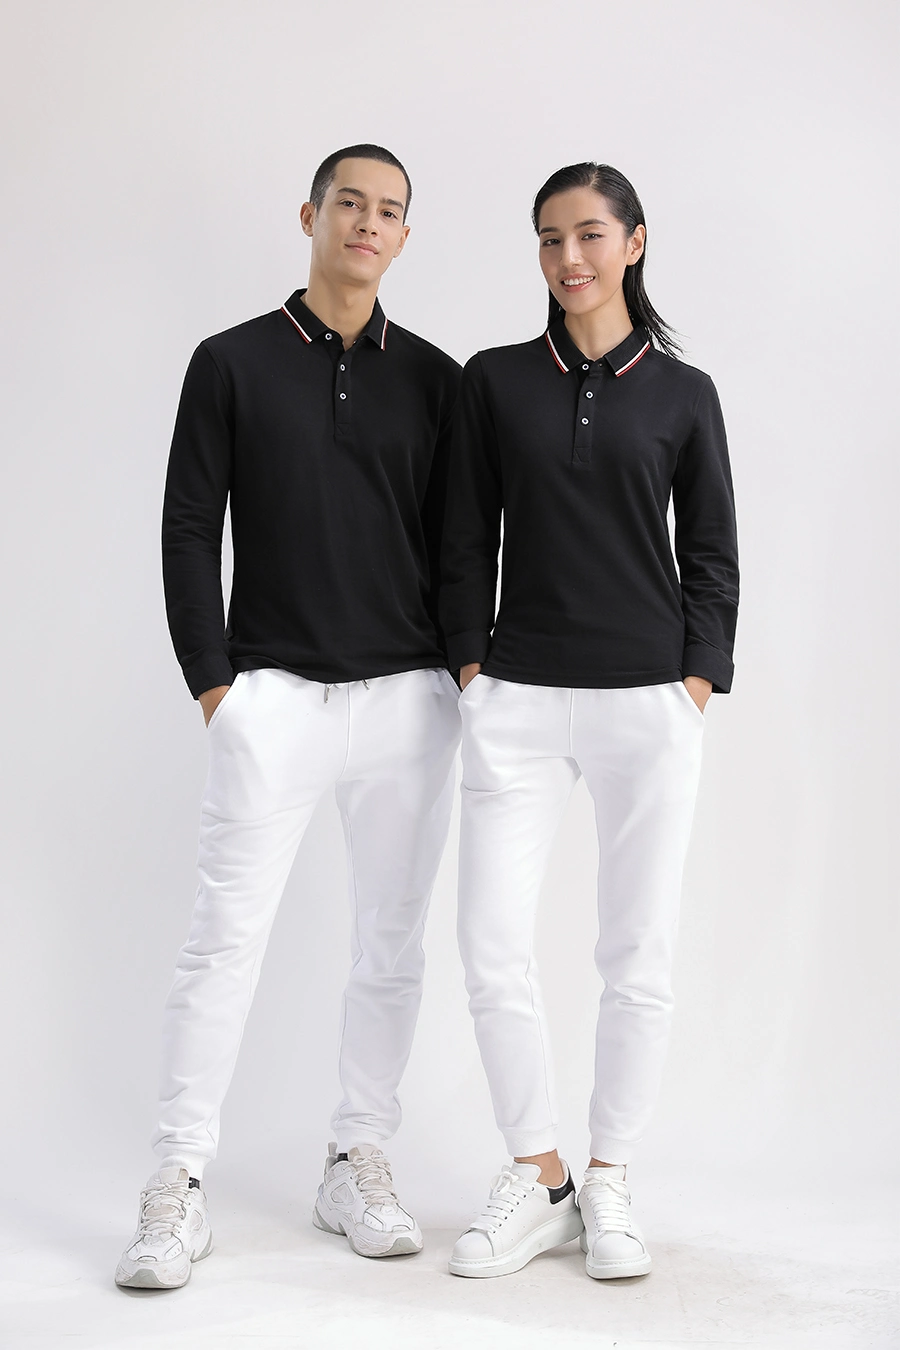 Men's Shirt Polo Golf Polo Shirt Men Girls’ T-Shirts